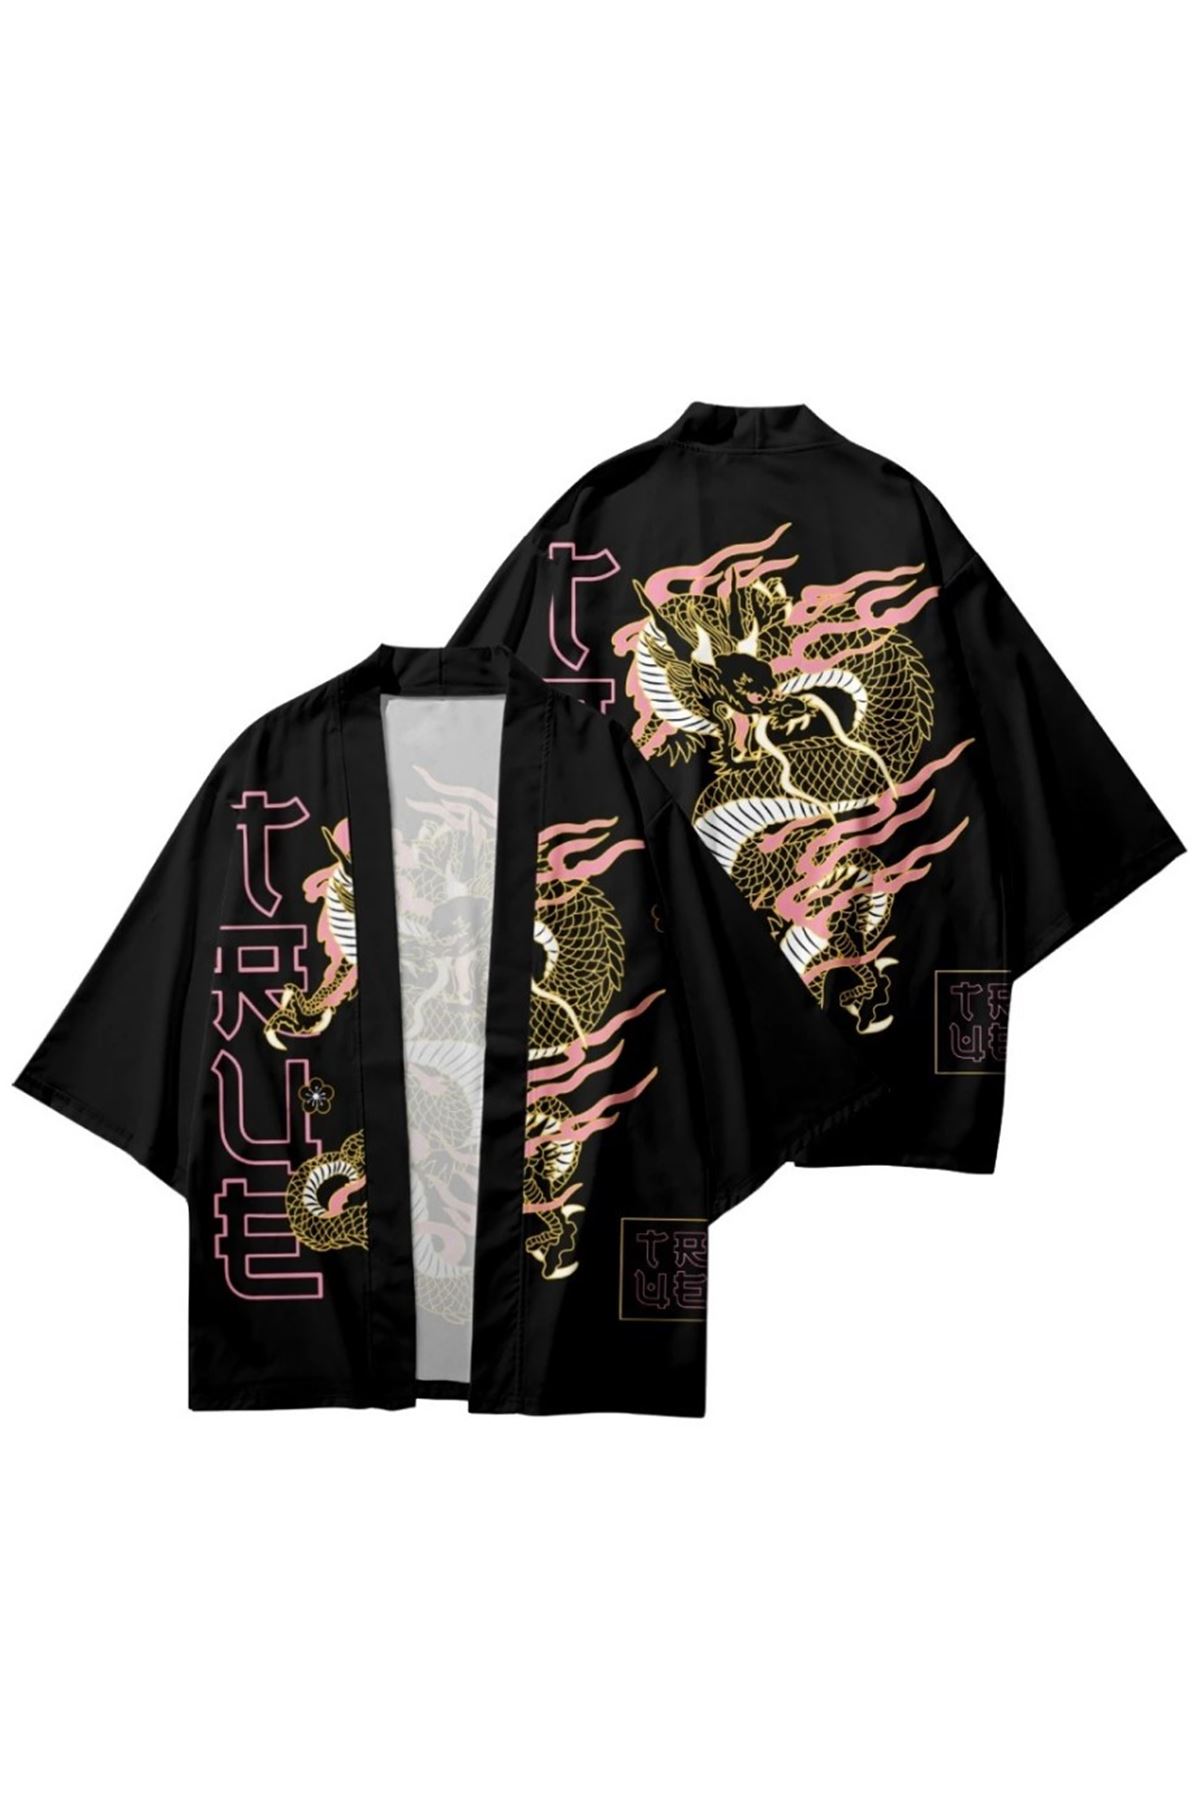 Japon Kadın/Erkek/Unisex/Oversize Siyah/Bej/Kırmızı Kimono-Siyah 1018